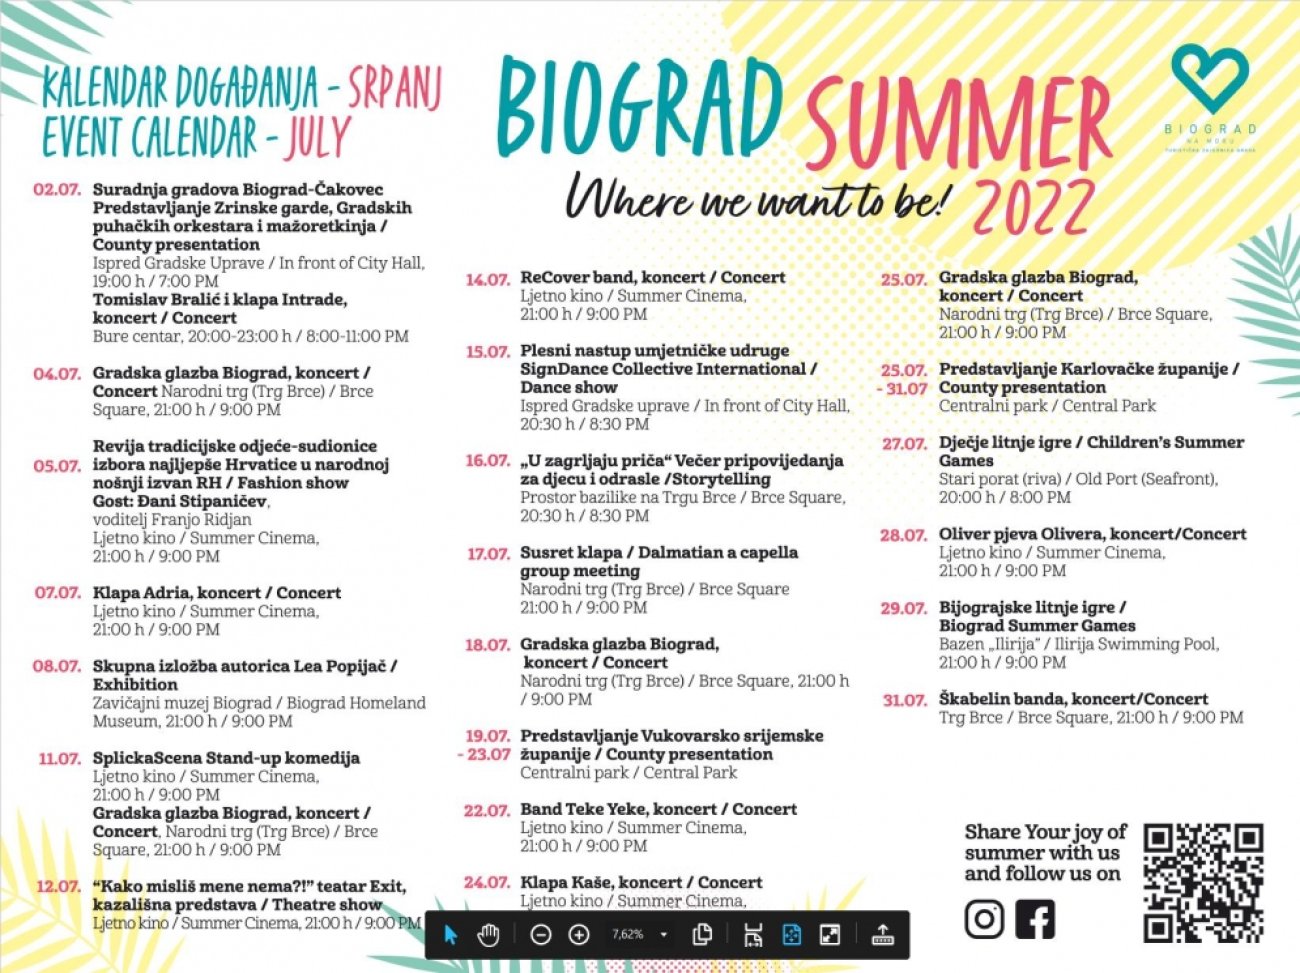 Biograd summer JULY/SRPANJ 2022